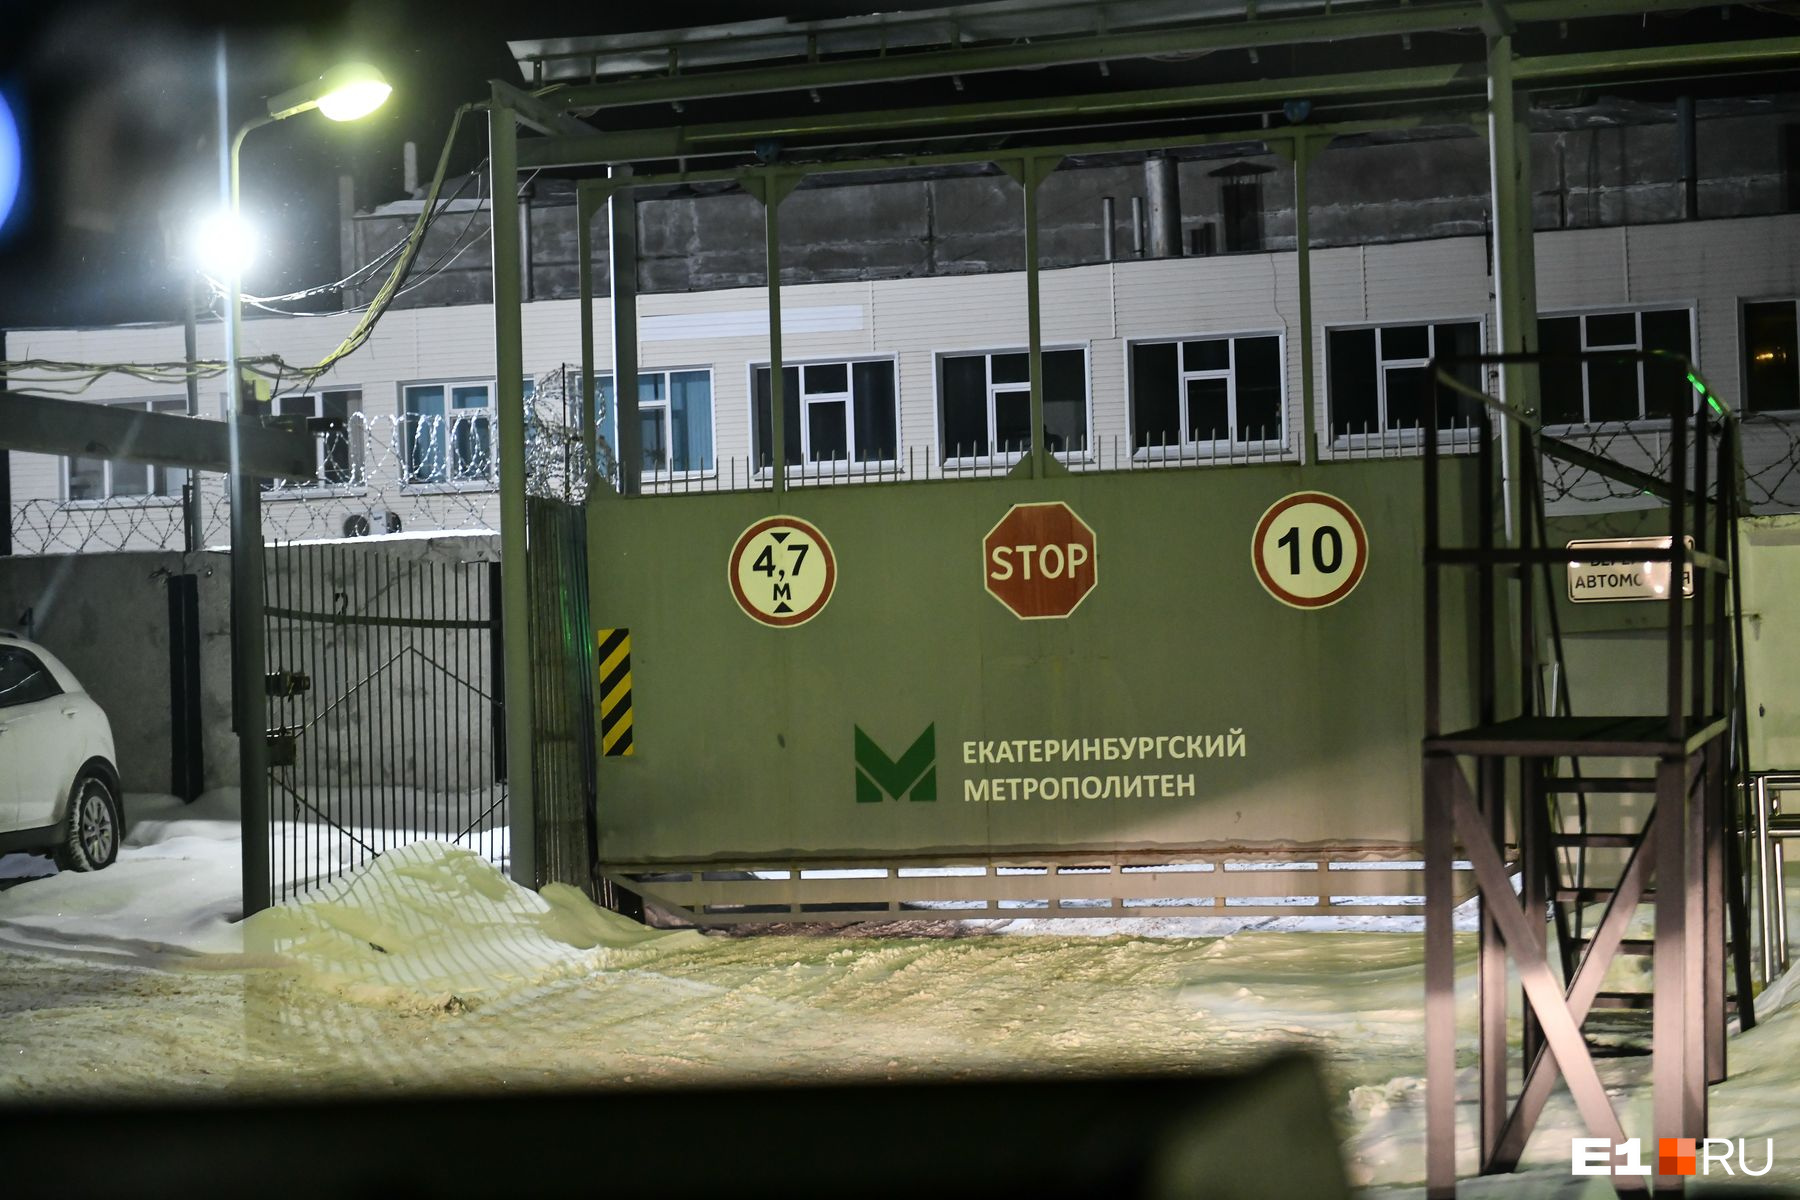 В метро Екатеринбурга под покровом ночи привезли секретный объект. Он весит 300 килограмм